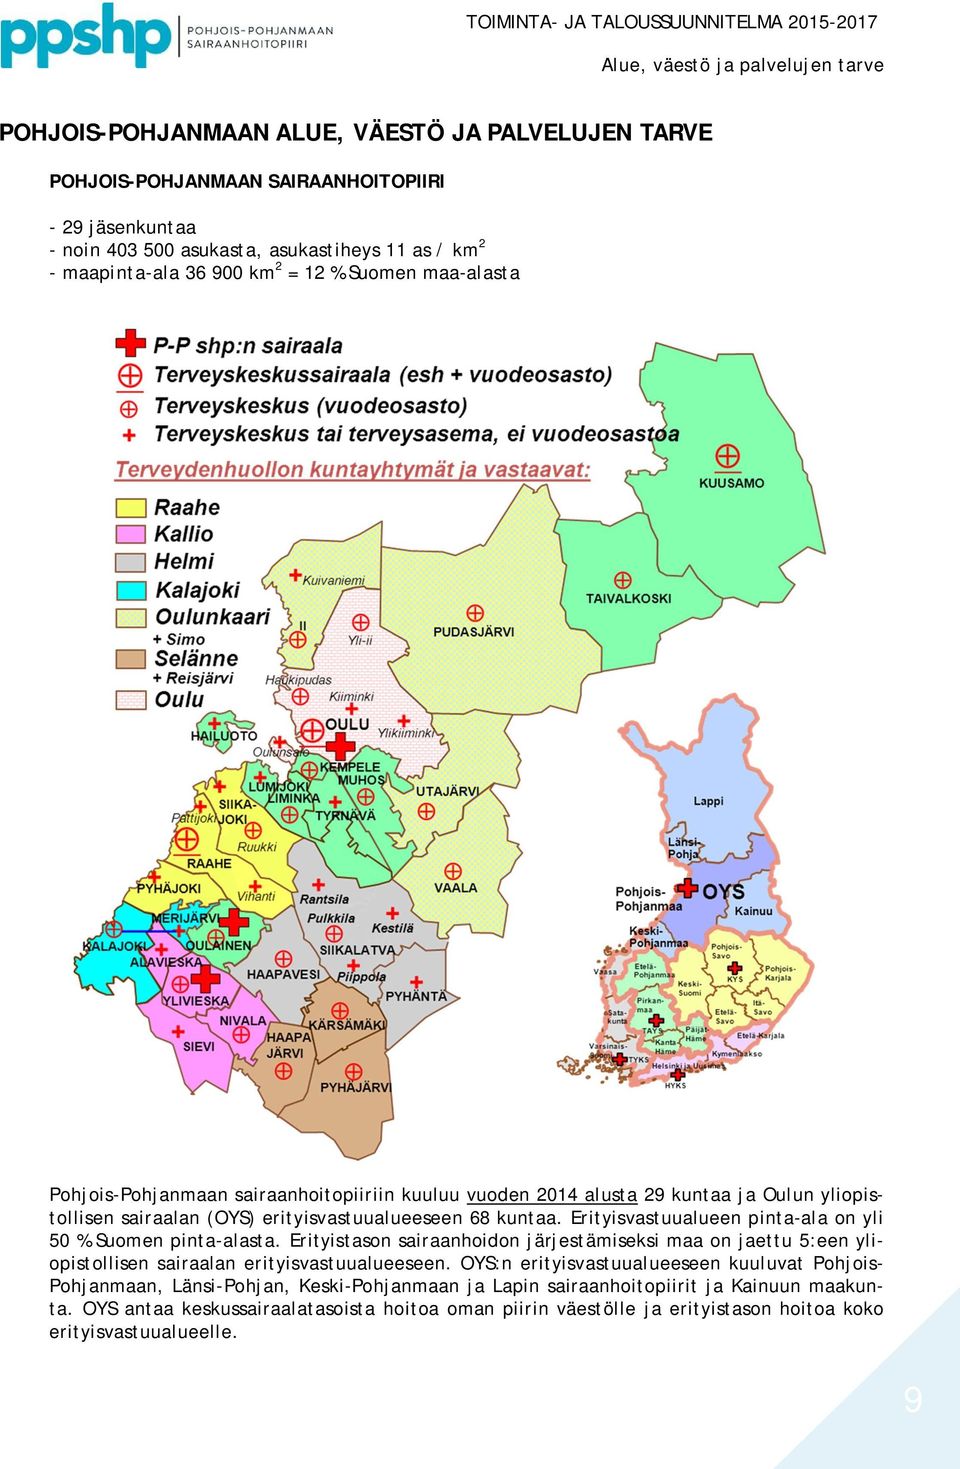 Erityisvastuualueen pinta-ala on yli 50 % Suomen pinta-alasta. Erityistason sairaanhoidon järjestämiseksi maa on jaettu 5:een yliopistollisen sairaalan erityisvastuualueeseen.